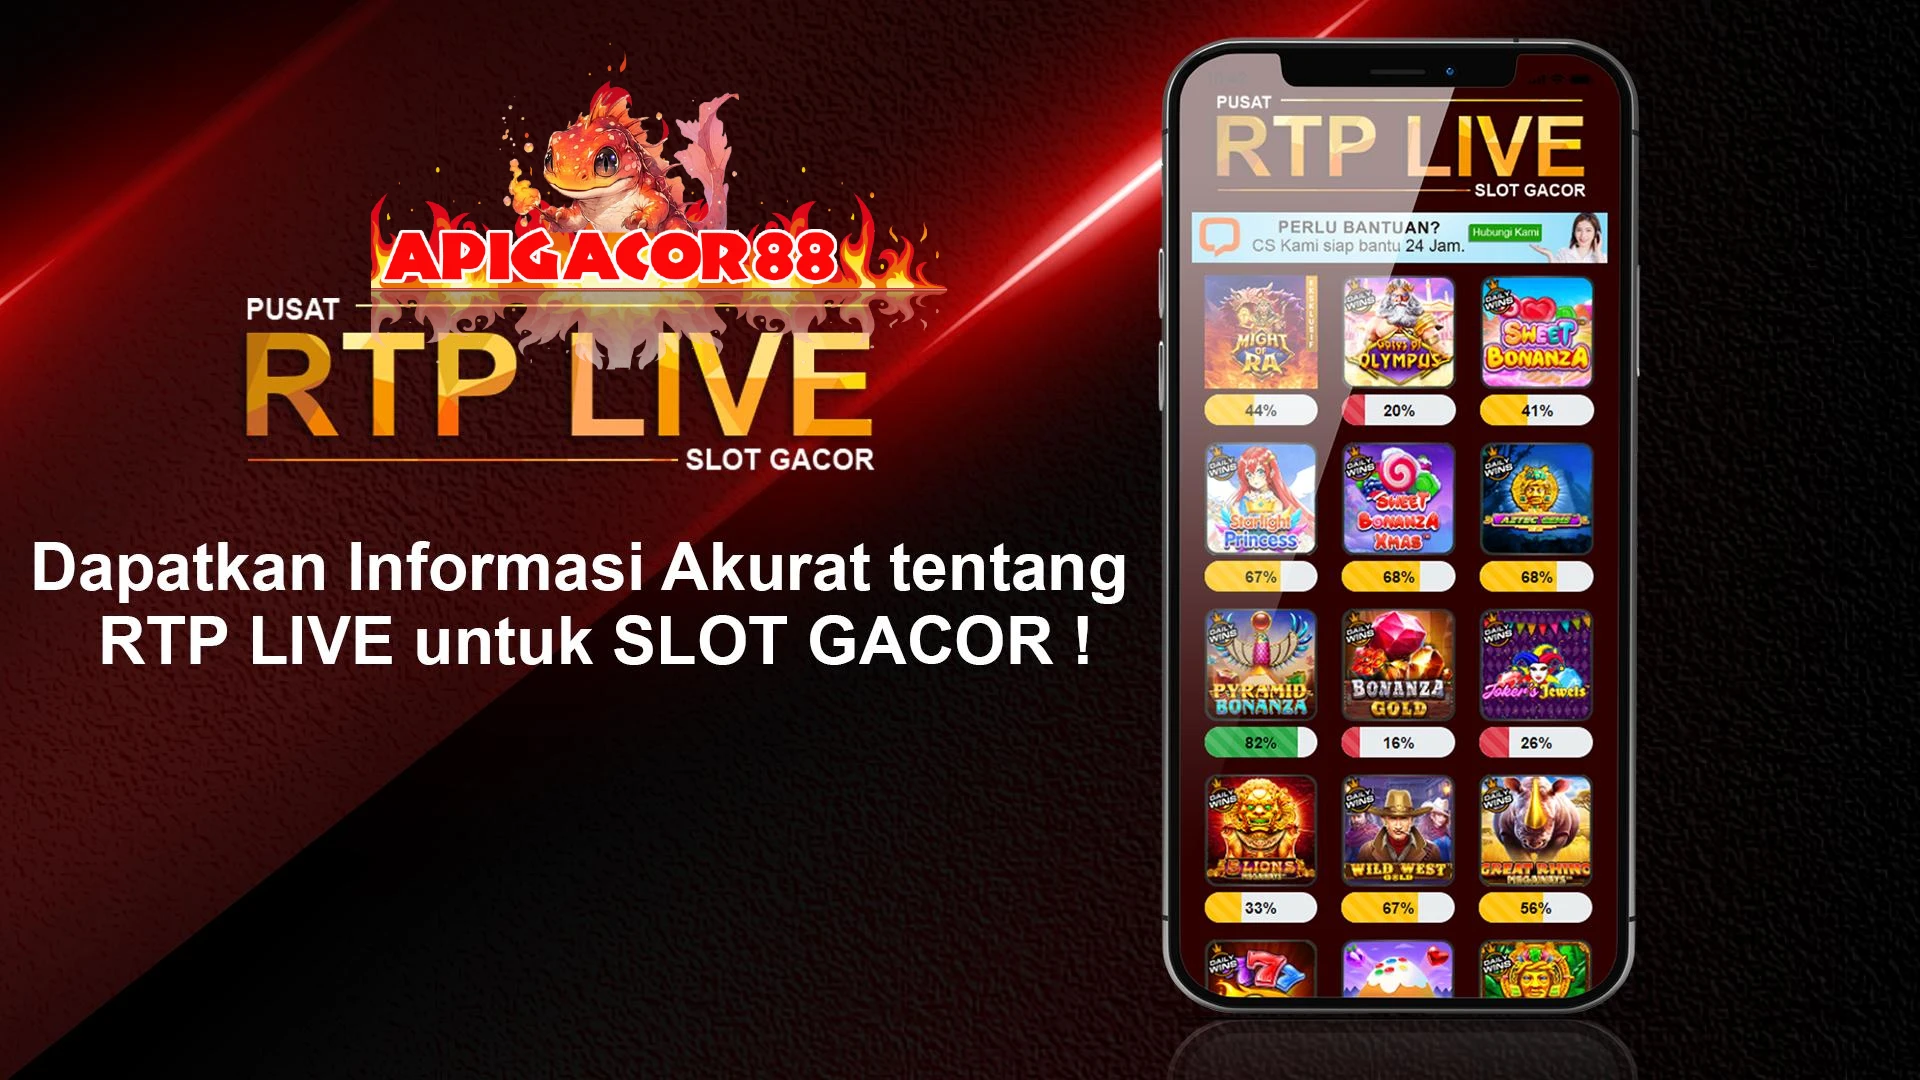 Apigacor88: Situs Live RTP Slot Gacor Terbaik & Gratis - Main Sekarang!